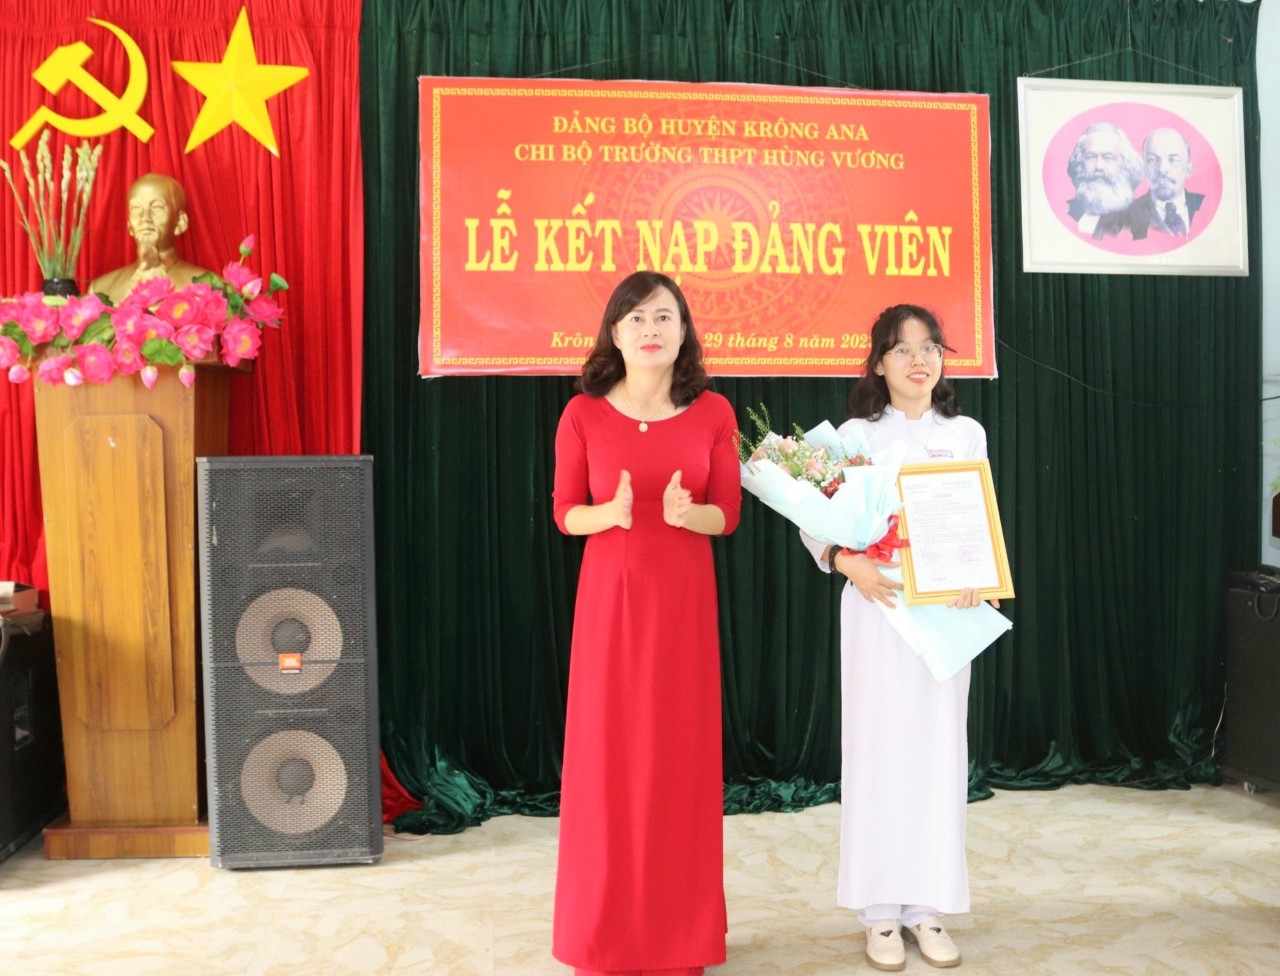 Lễ kết nạp Đảng cho 2 học sinh ưu tú trường THPT Hùng Vương